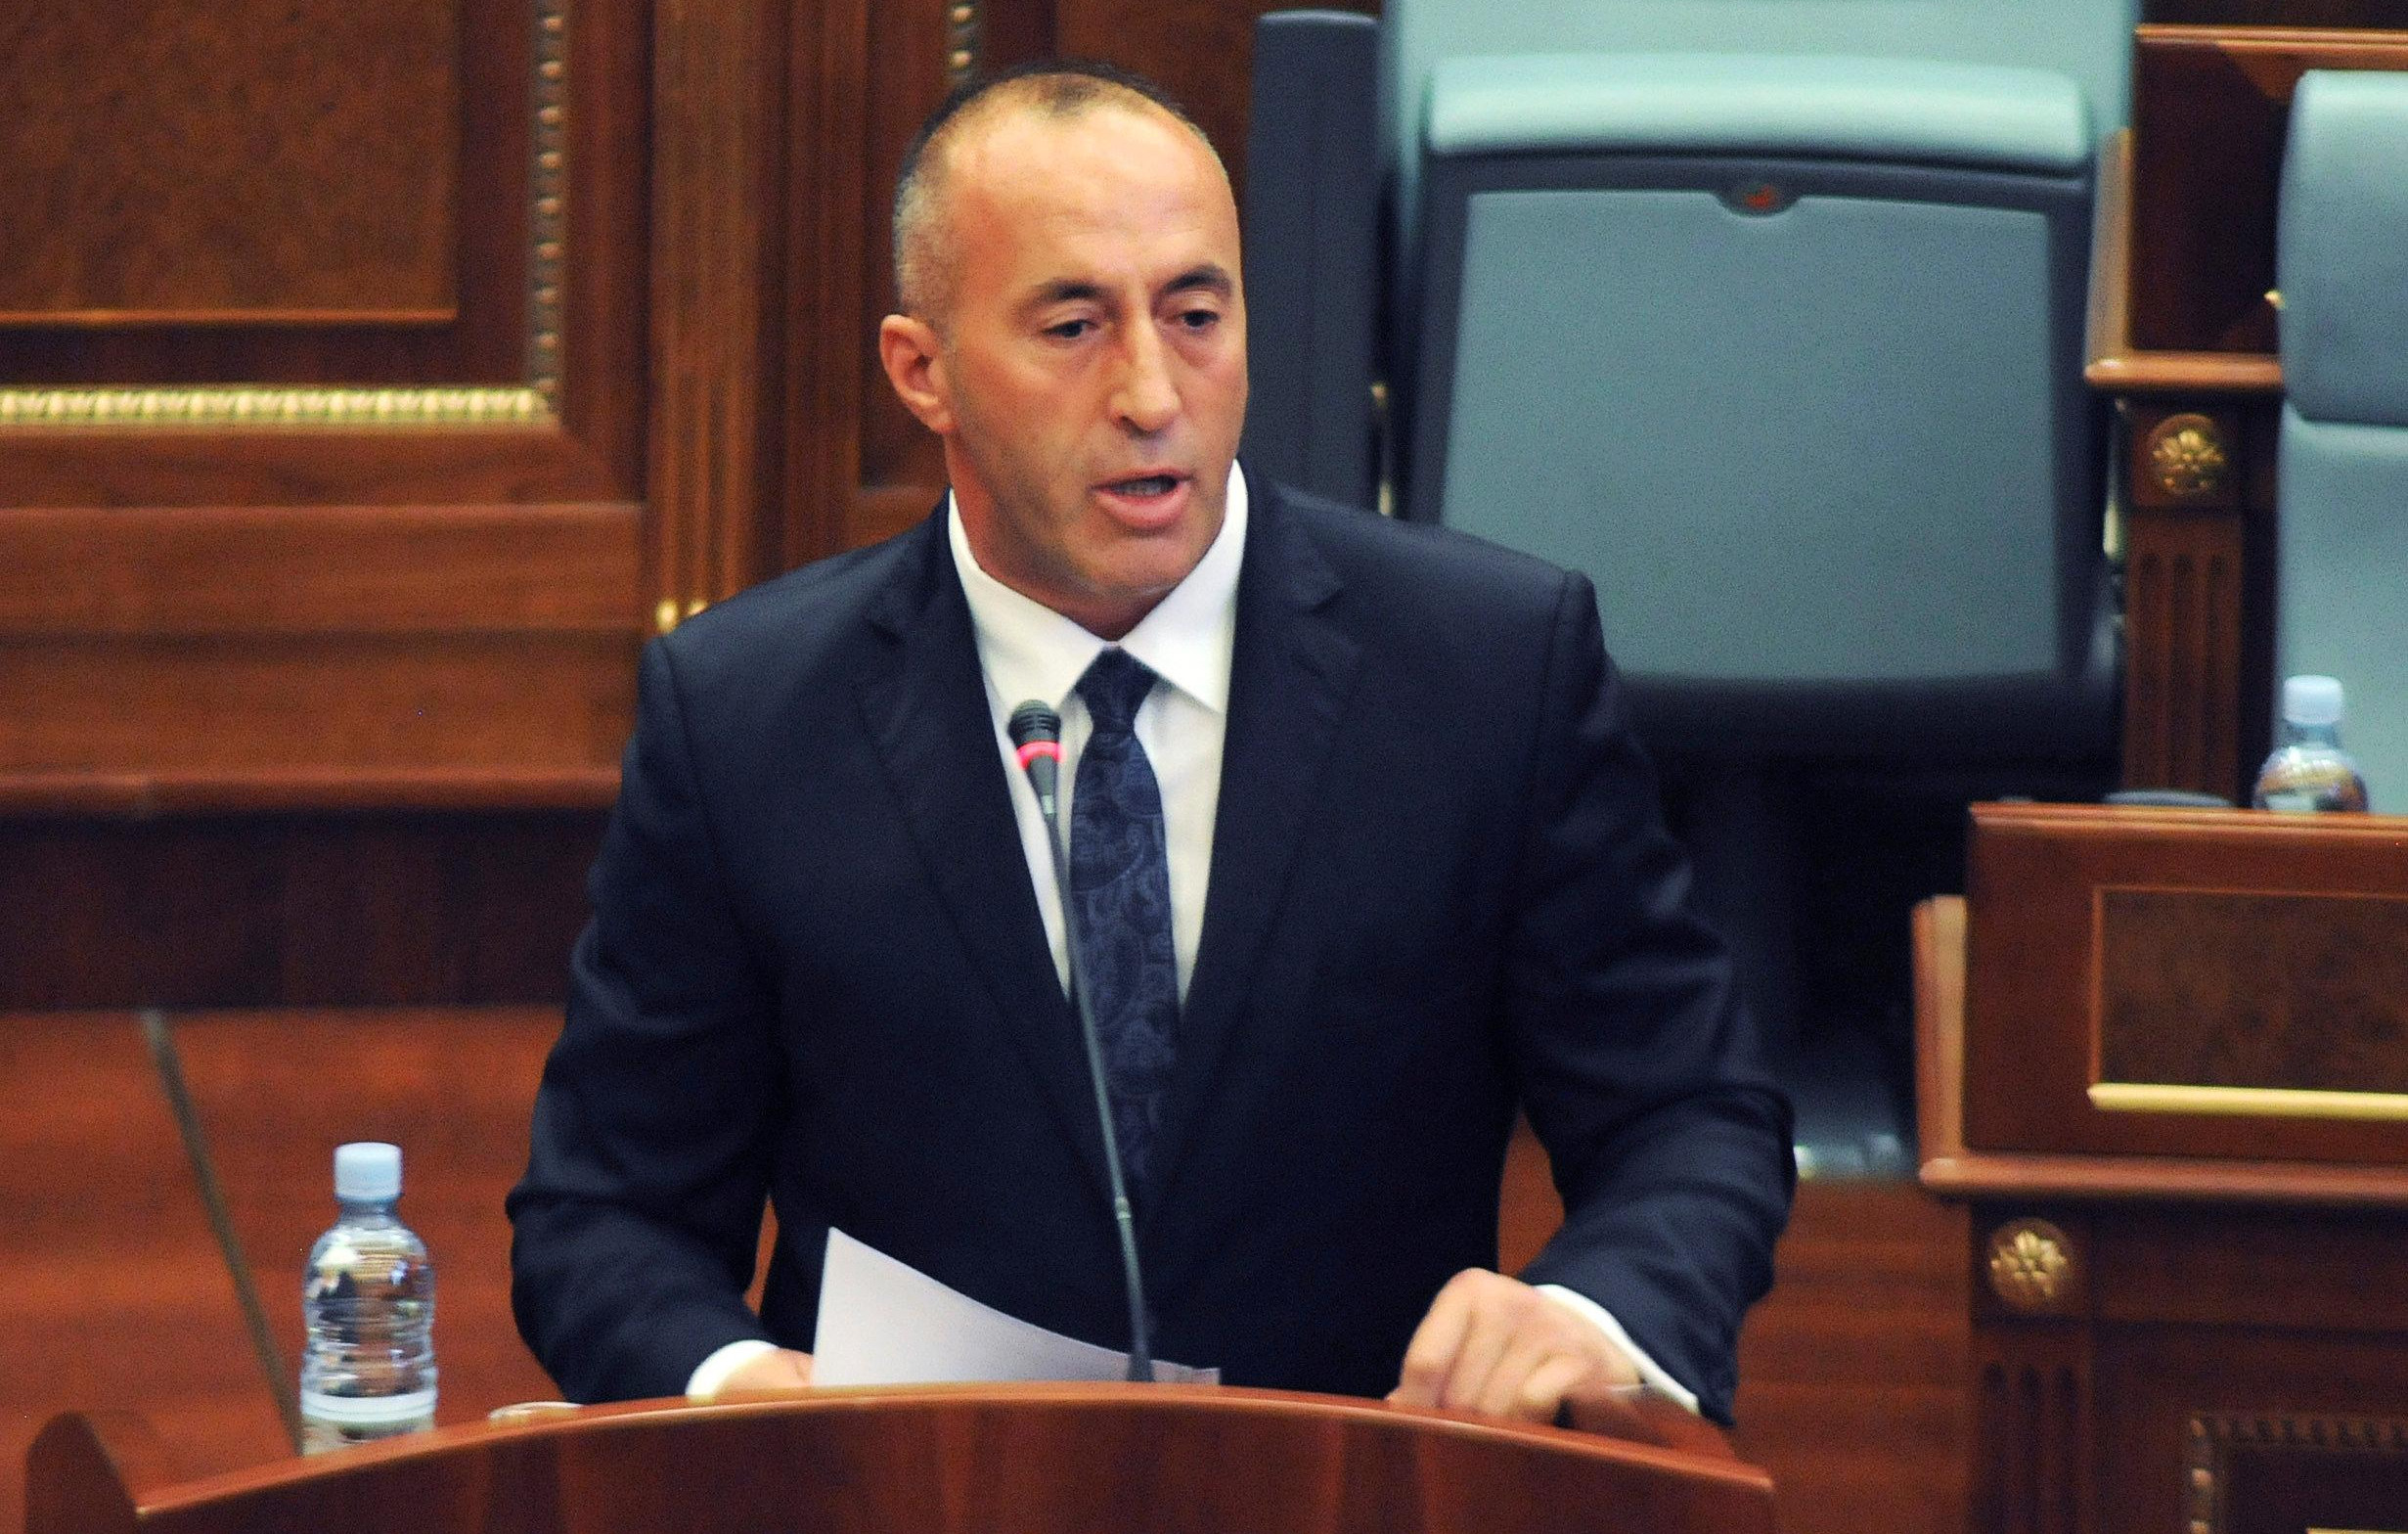 ŠTETOČINA! Premijer lažne države Kosovo opet provocira - HARADINAJ DELI PASOŠE ALBANCIMA U PREŠEVU!